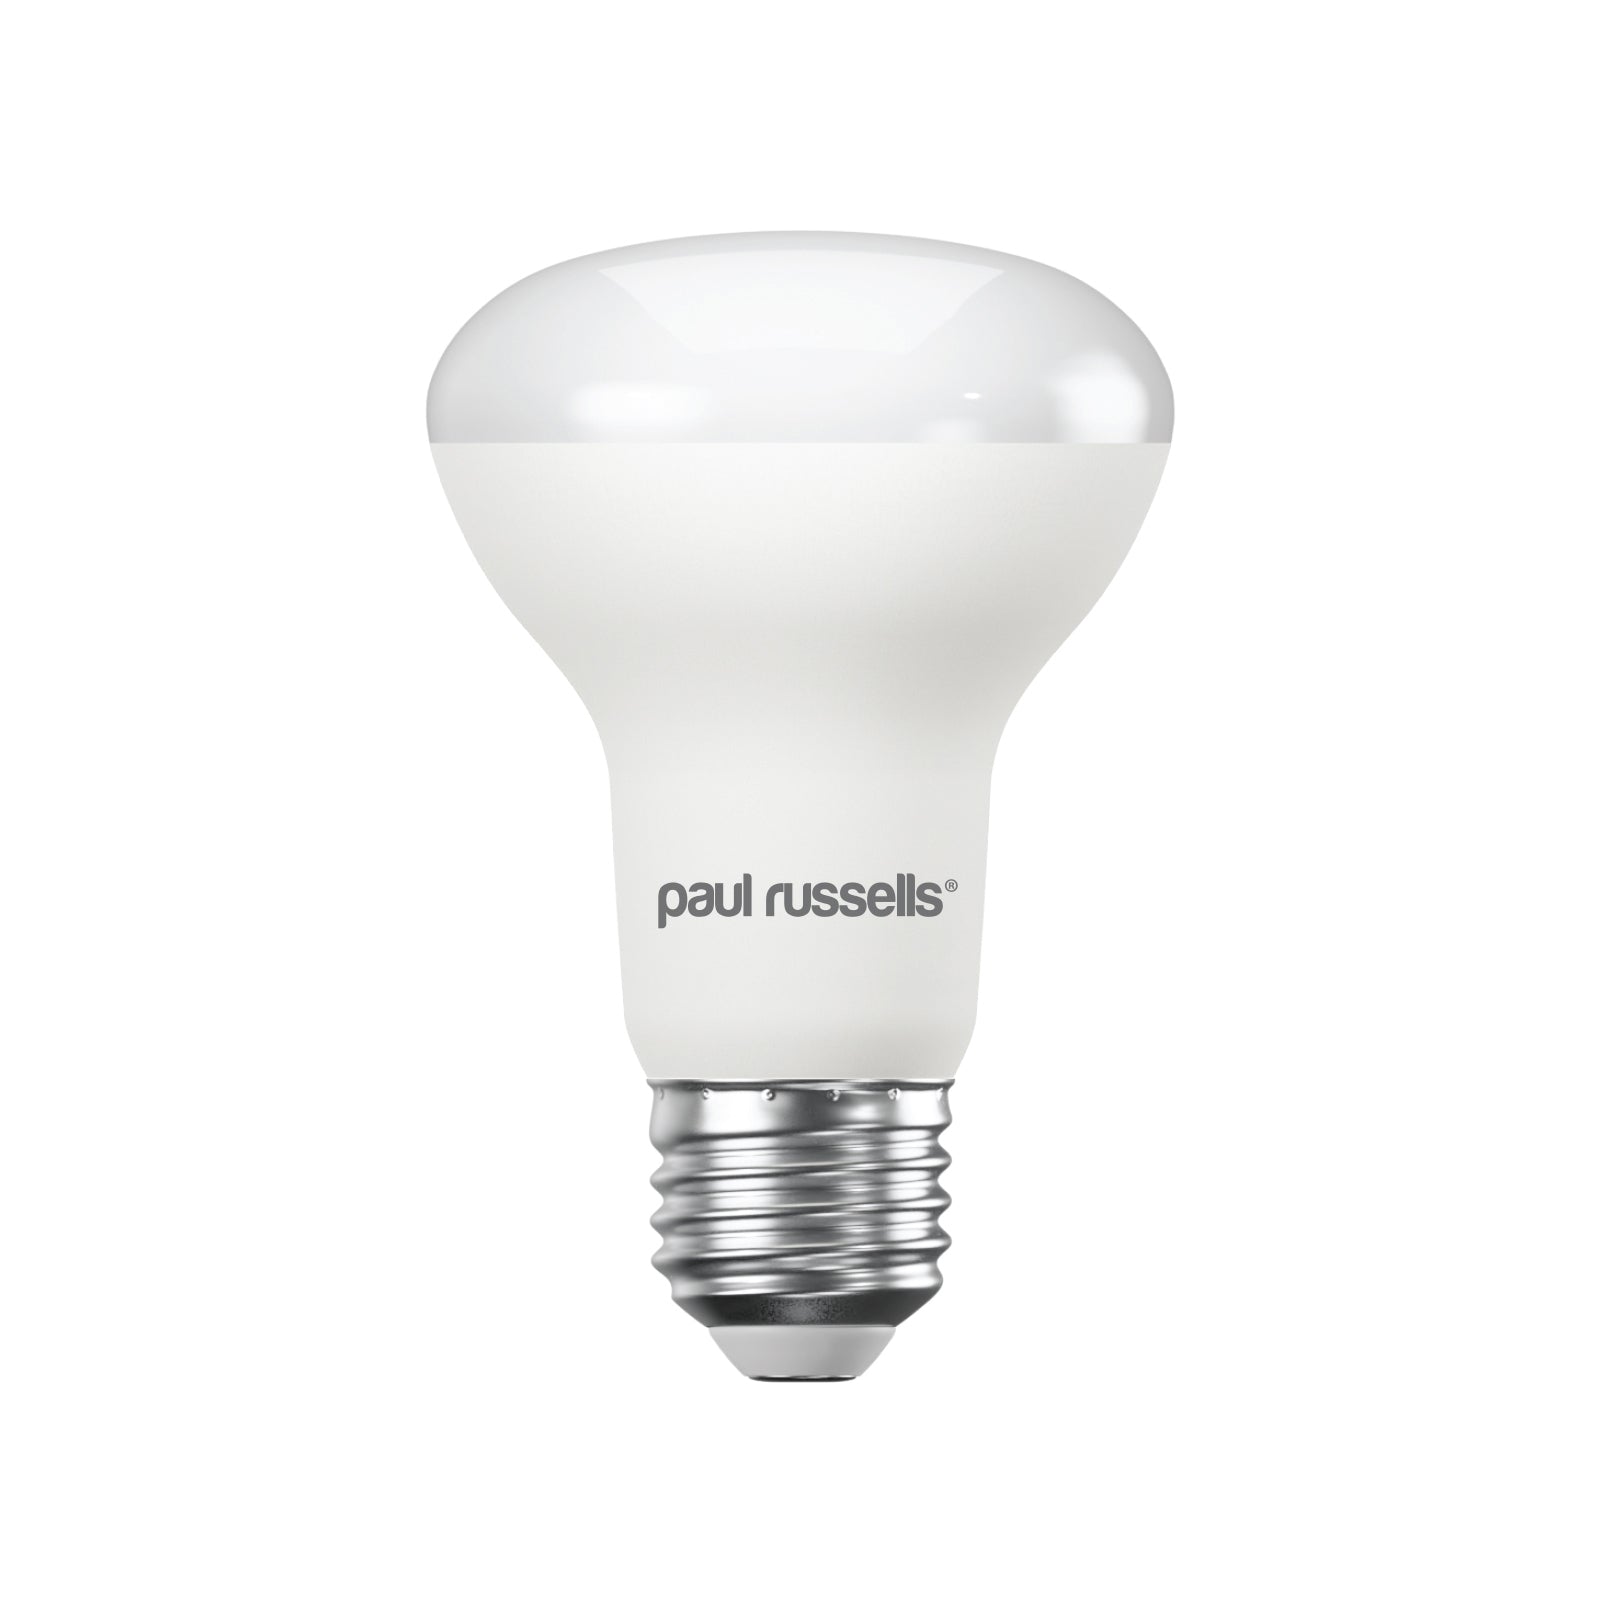 LED R63 8W (40w), ES/E27, 710 Lumens, Warm White(2700K), 240V